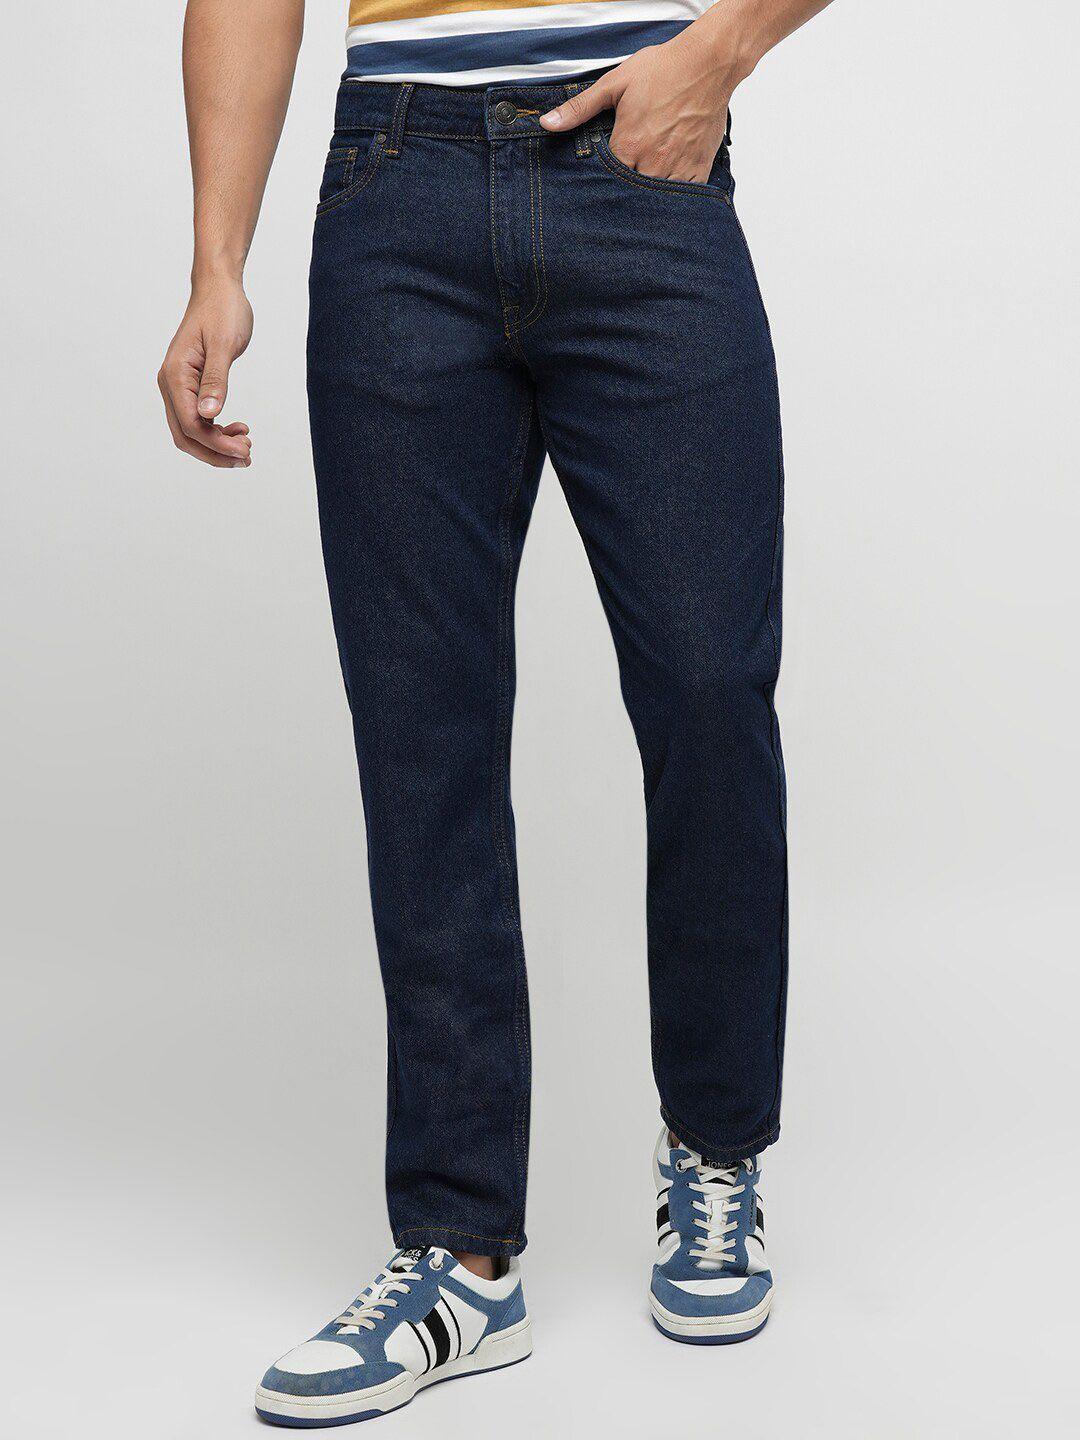 jack-&-jones-men-mid-rise-clean-look-pure-cotton-jeans